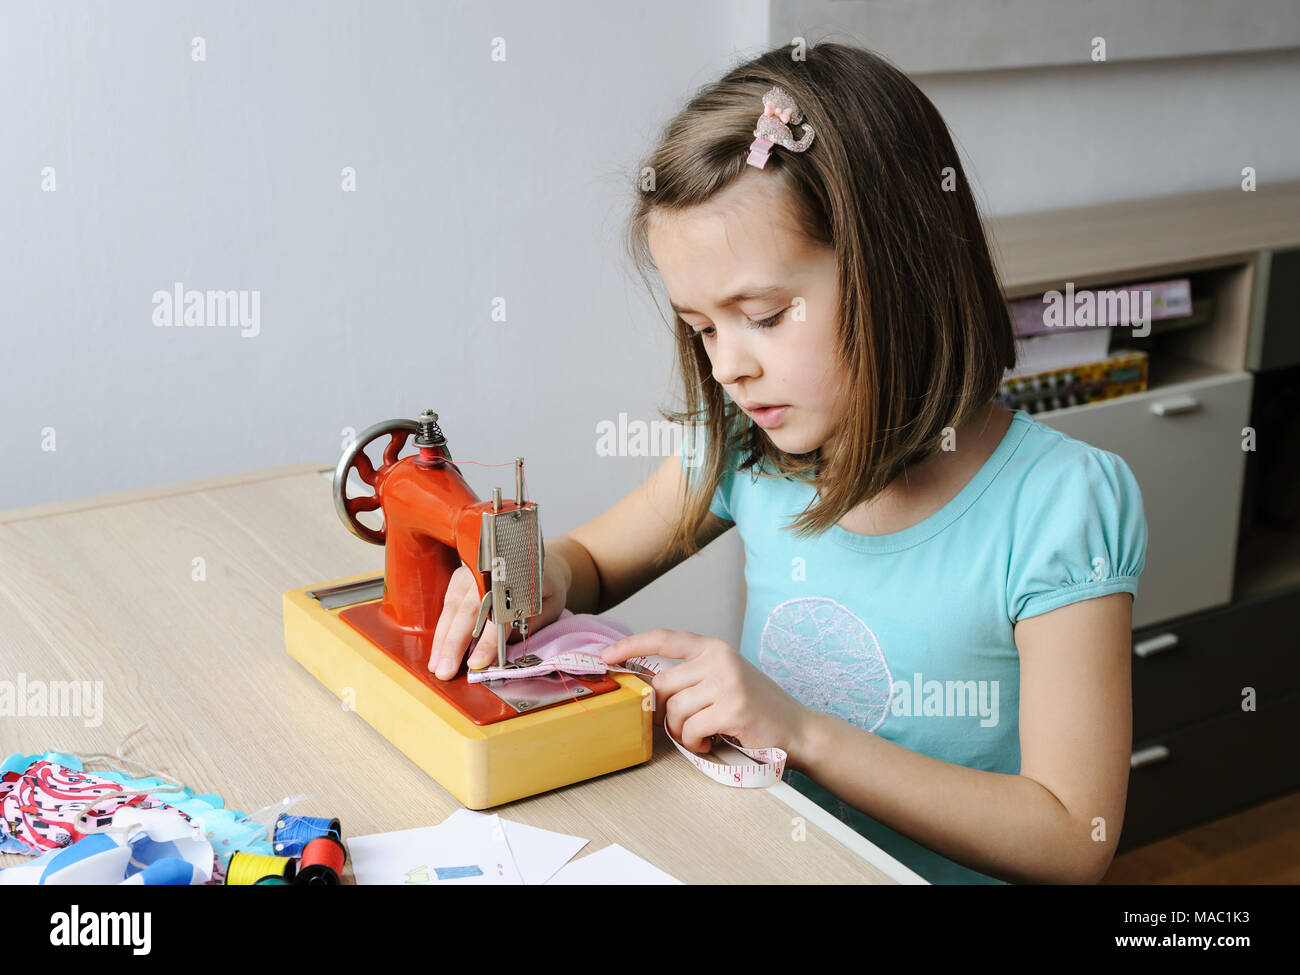 Das Mädchen ist das Nähen eines Kleides für eine Puppe auf einer Nähmaschine. Sie mit einem Maßband, das Produkt zu messen. Stockfoto